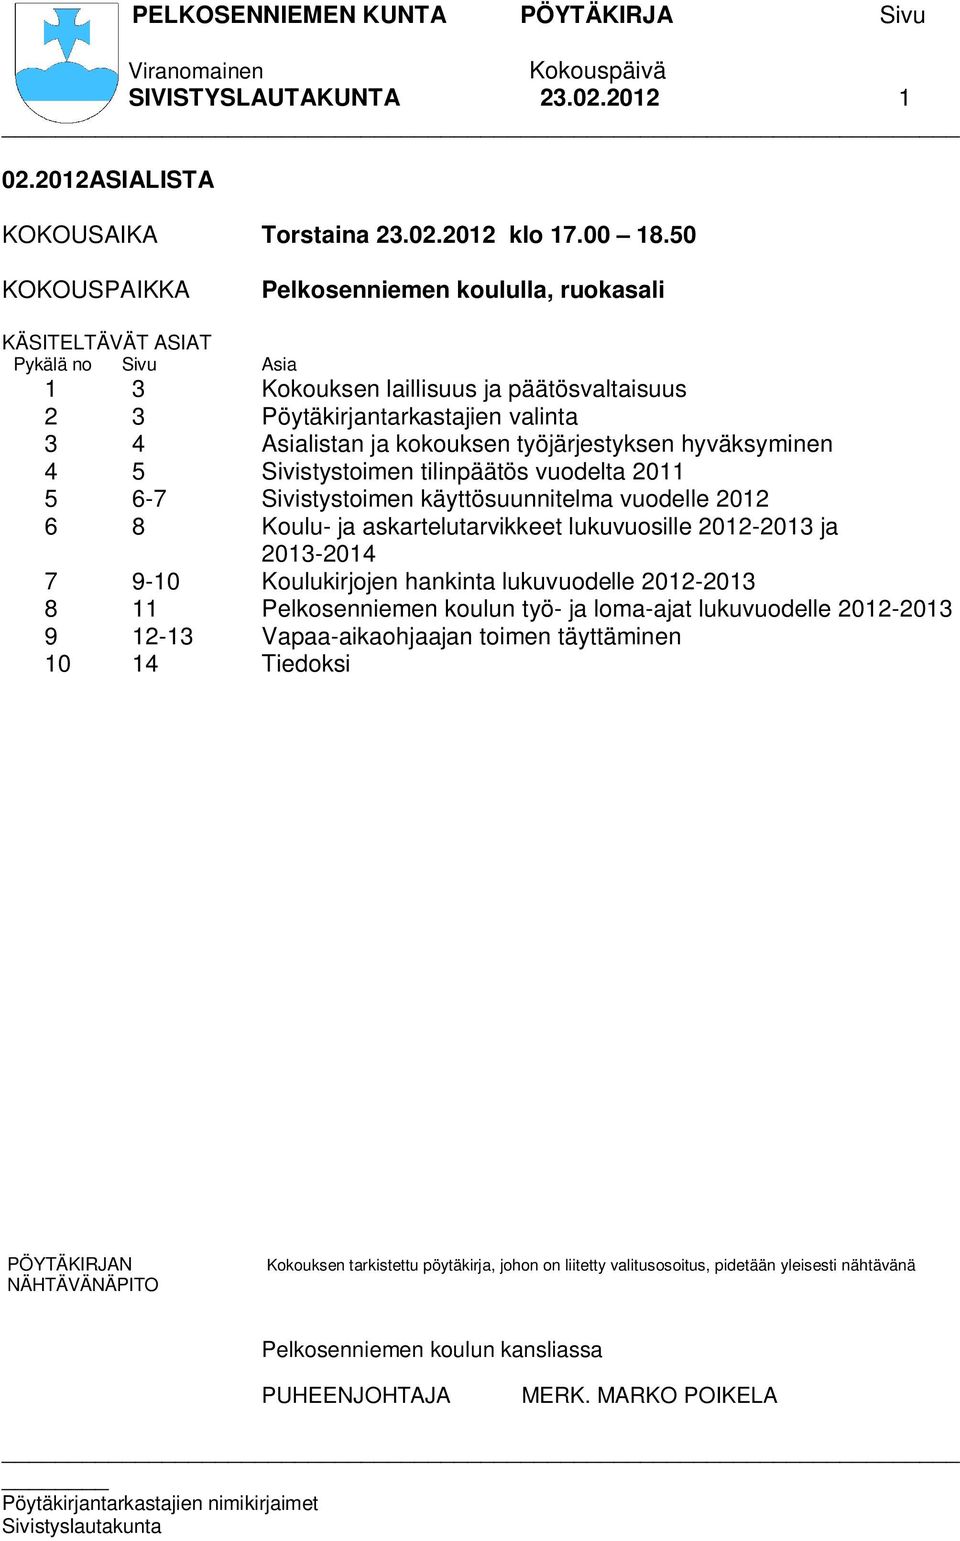 työjärjestyksen hyväksyminen 4 5 Sivistystoimen tilinpäätös vuodelta 2011 5 6-7 Sivistystoimen käyttösuunnitelma vuodelle 2012 6 8 Koulu- ja askartelutarvikkeet lukuvuosille 2012-2013 ja 2013-2014 7